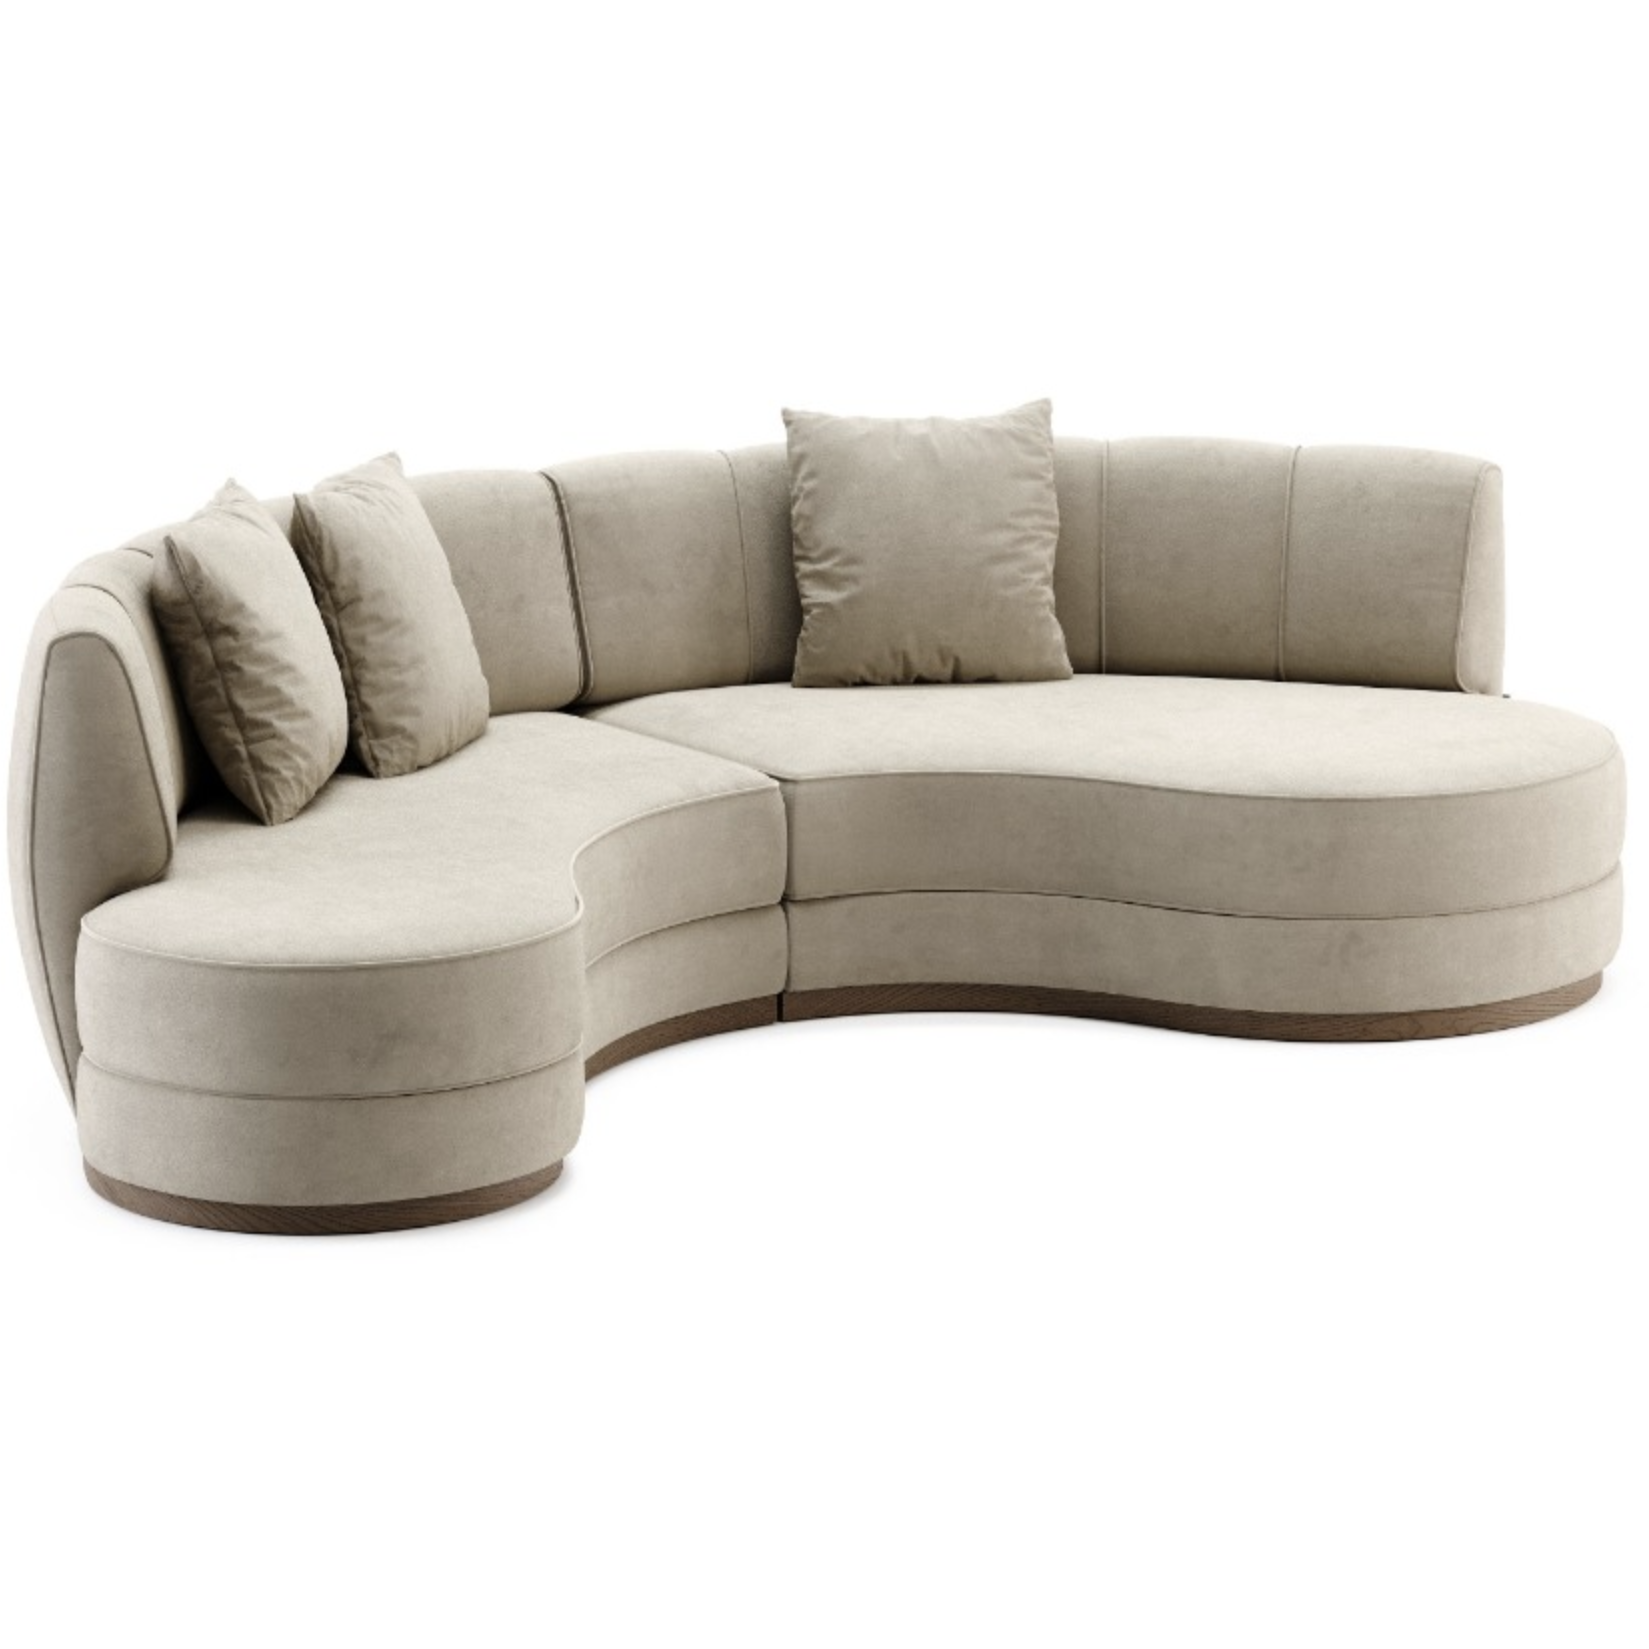 Domkapa Stella Sofa - Customisable | Modern Furniture + Decor